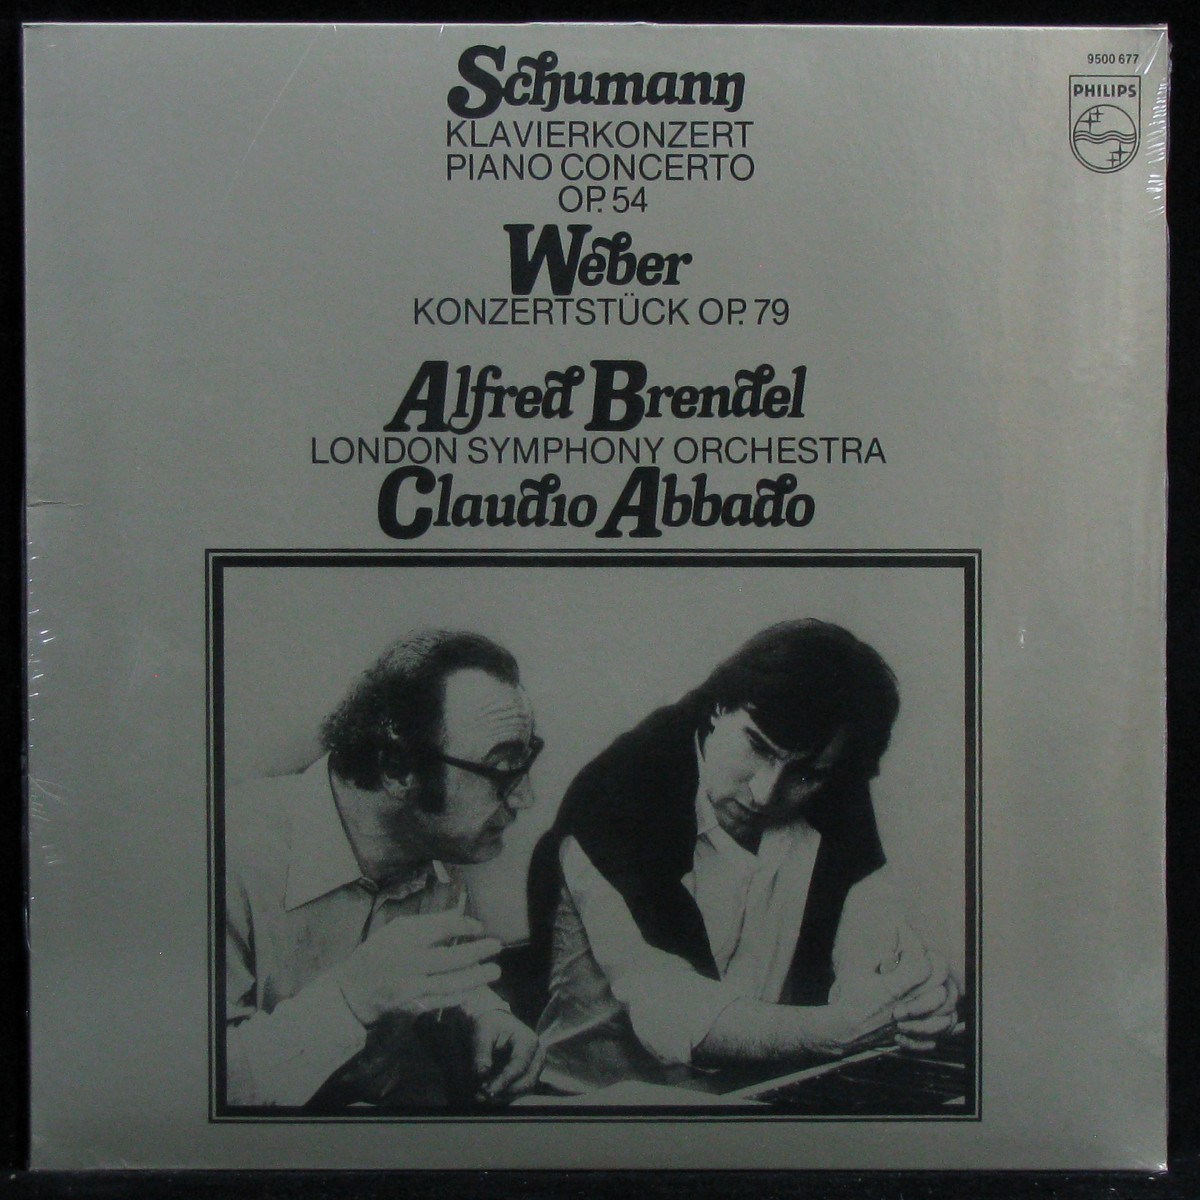 Schumann / Weber: Klavierkonzert Op. 54 / Konzertstück Op. 79